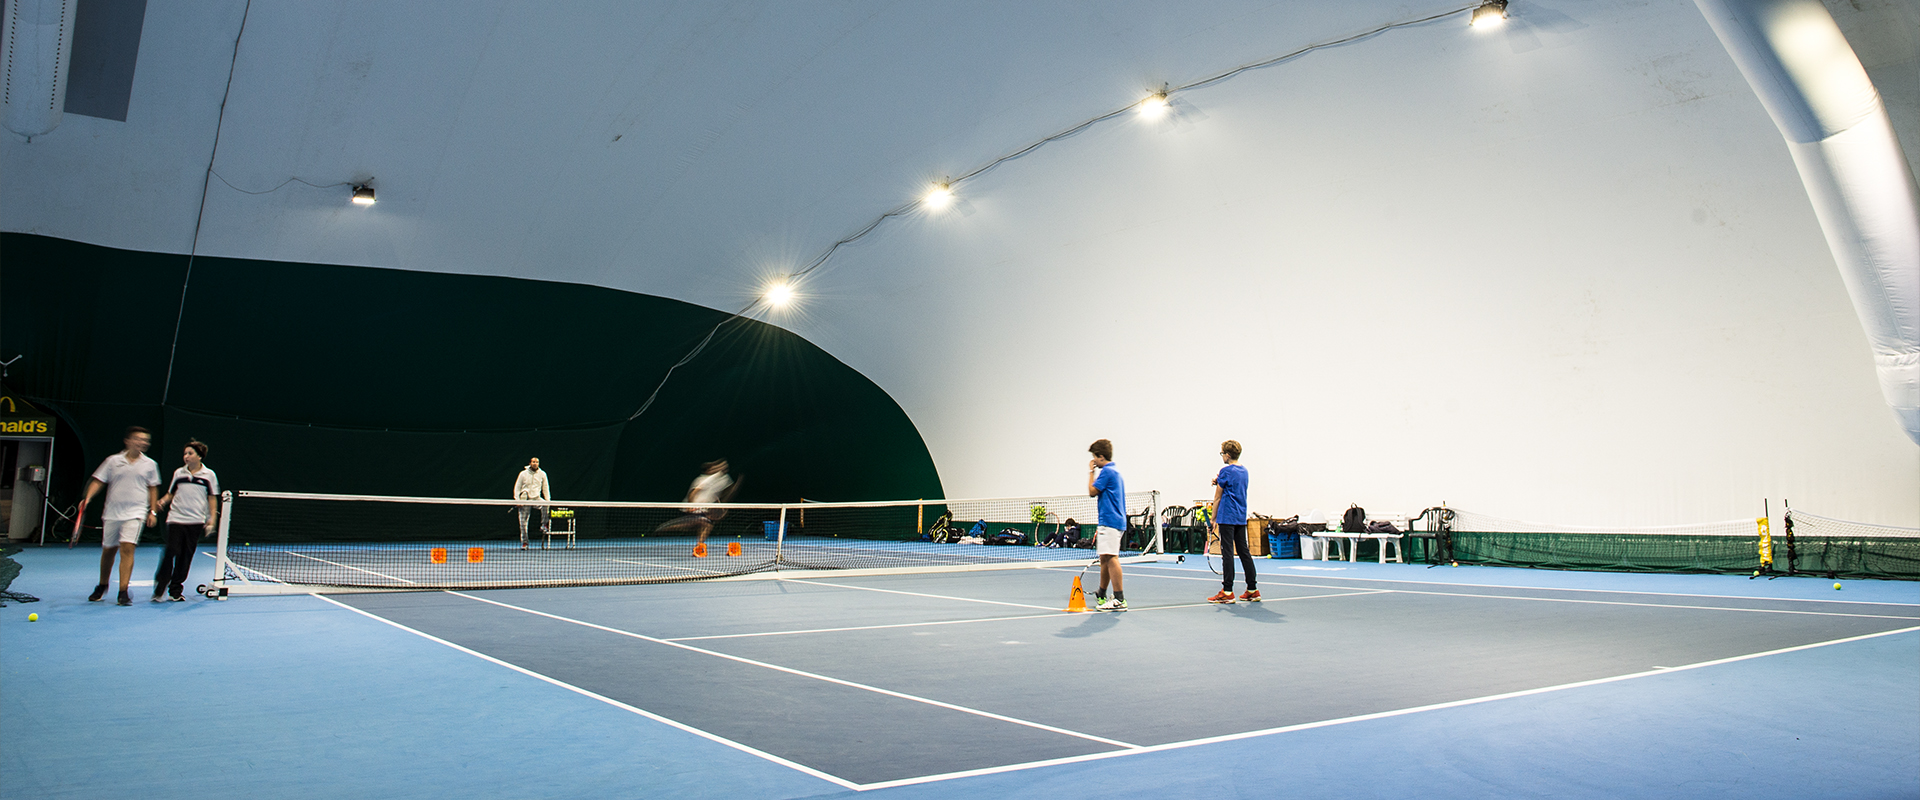 indoor tennis court lights